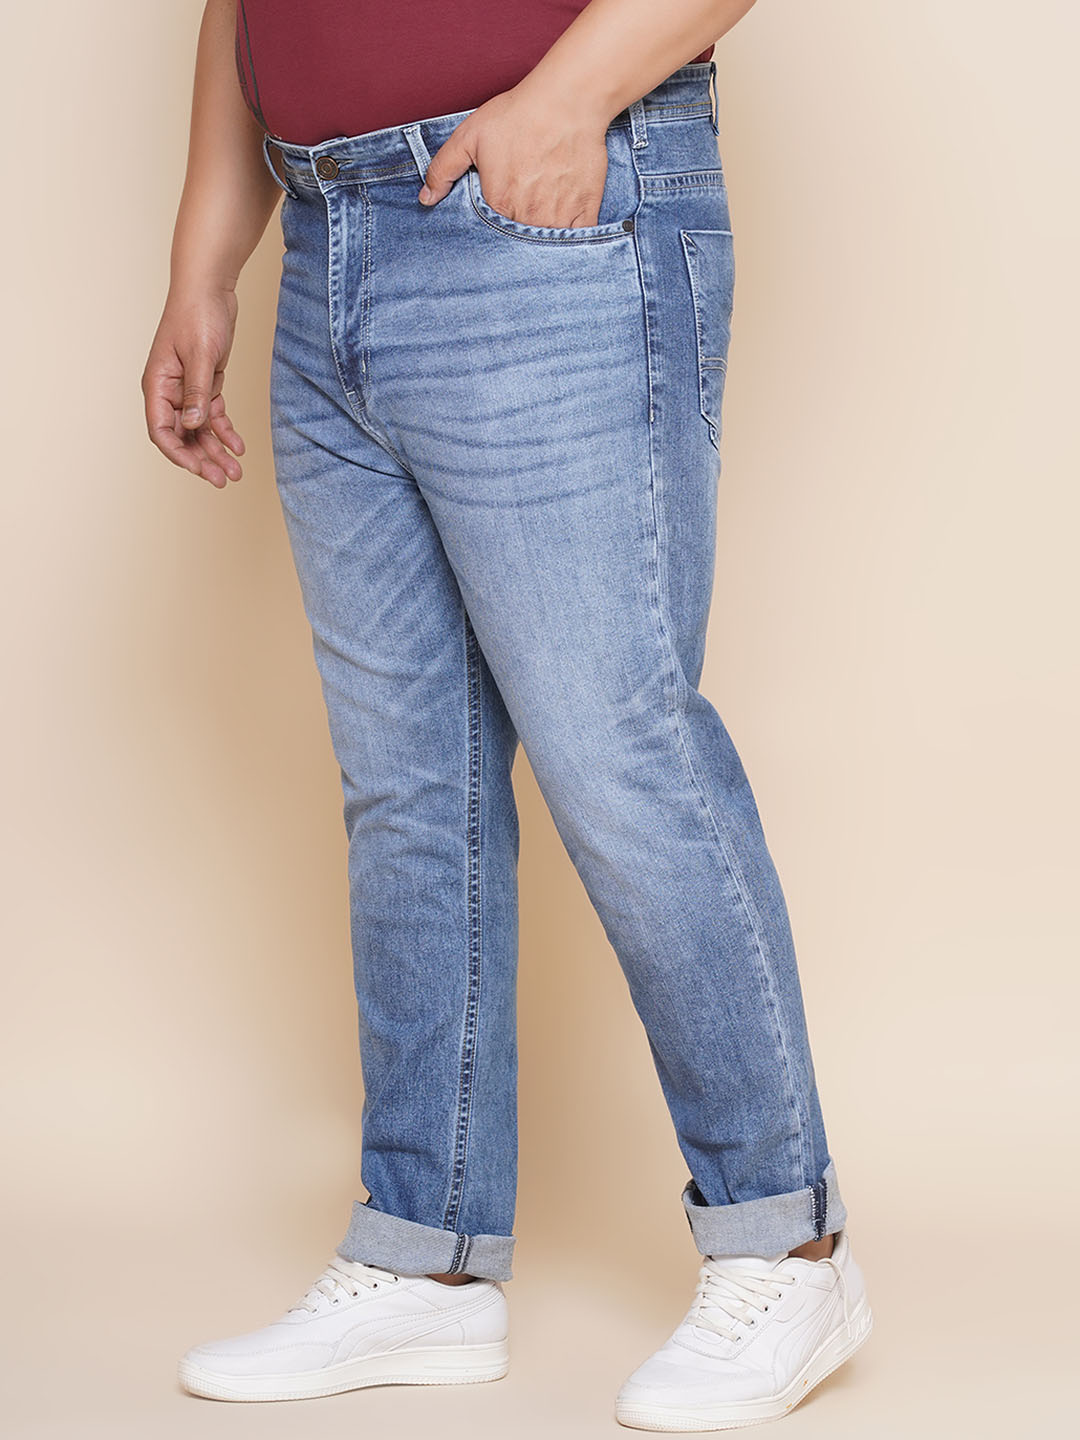 bottomwear/jeans/JPJ27033/jpj27033-4.jpg